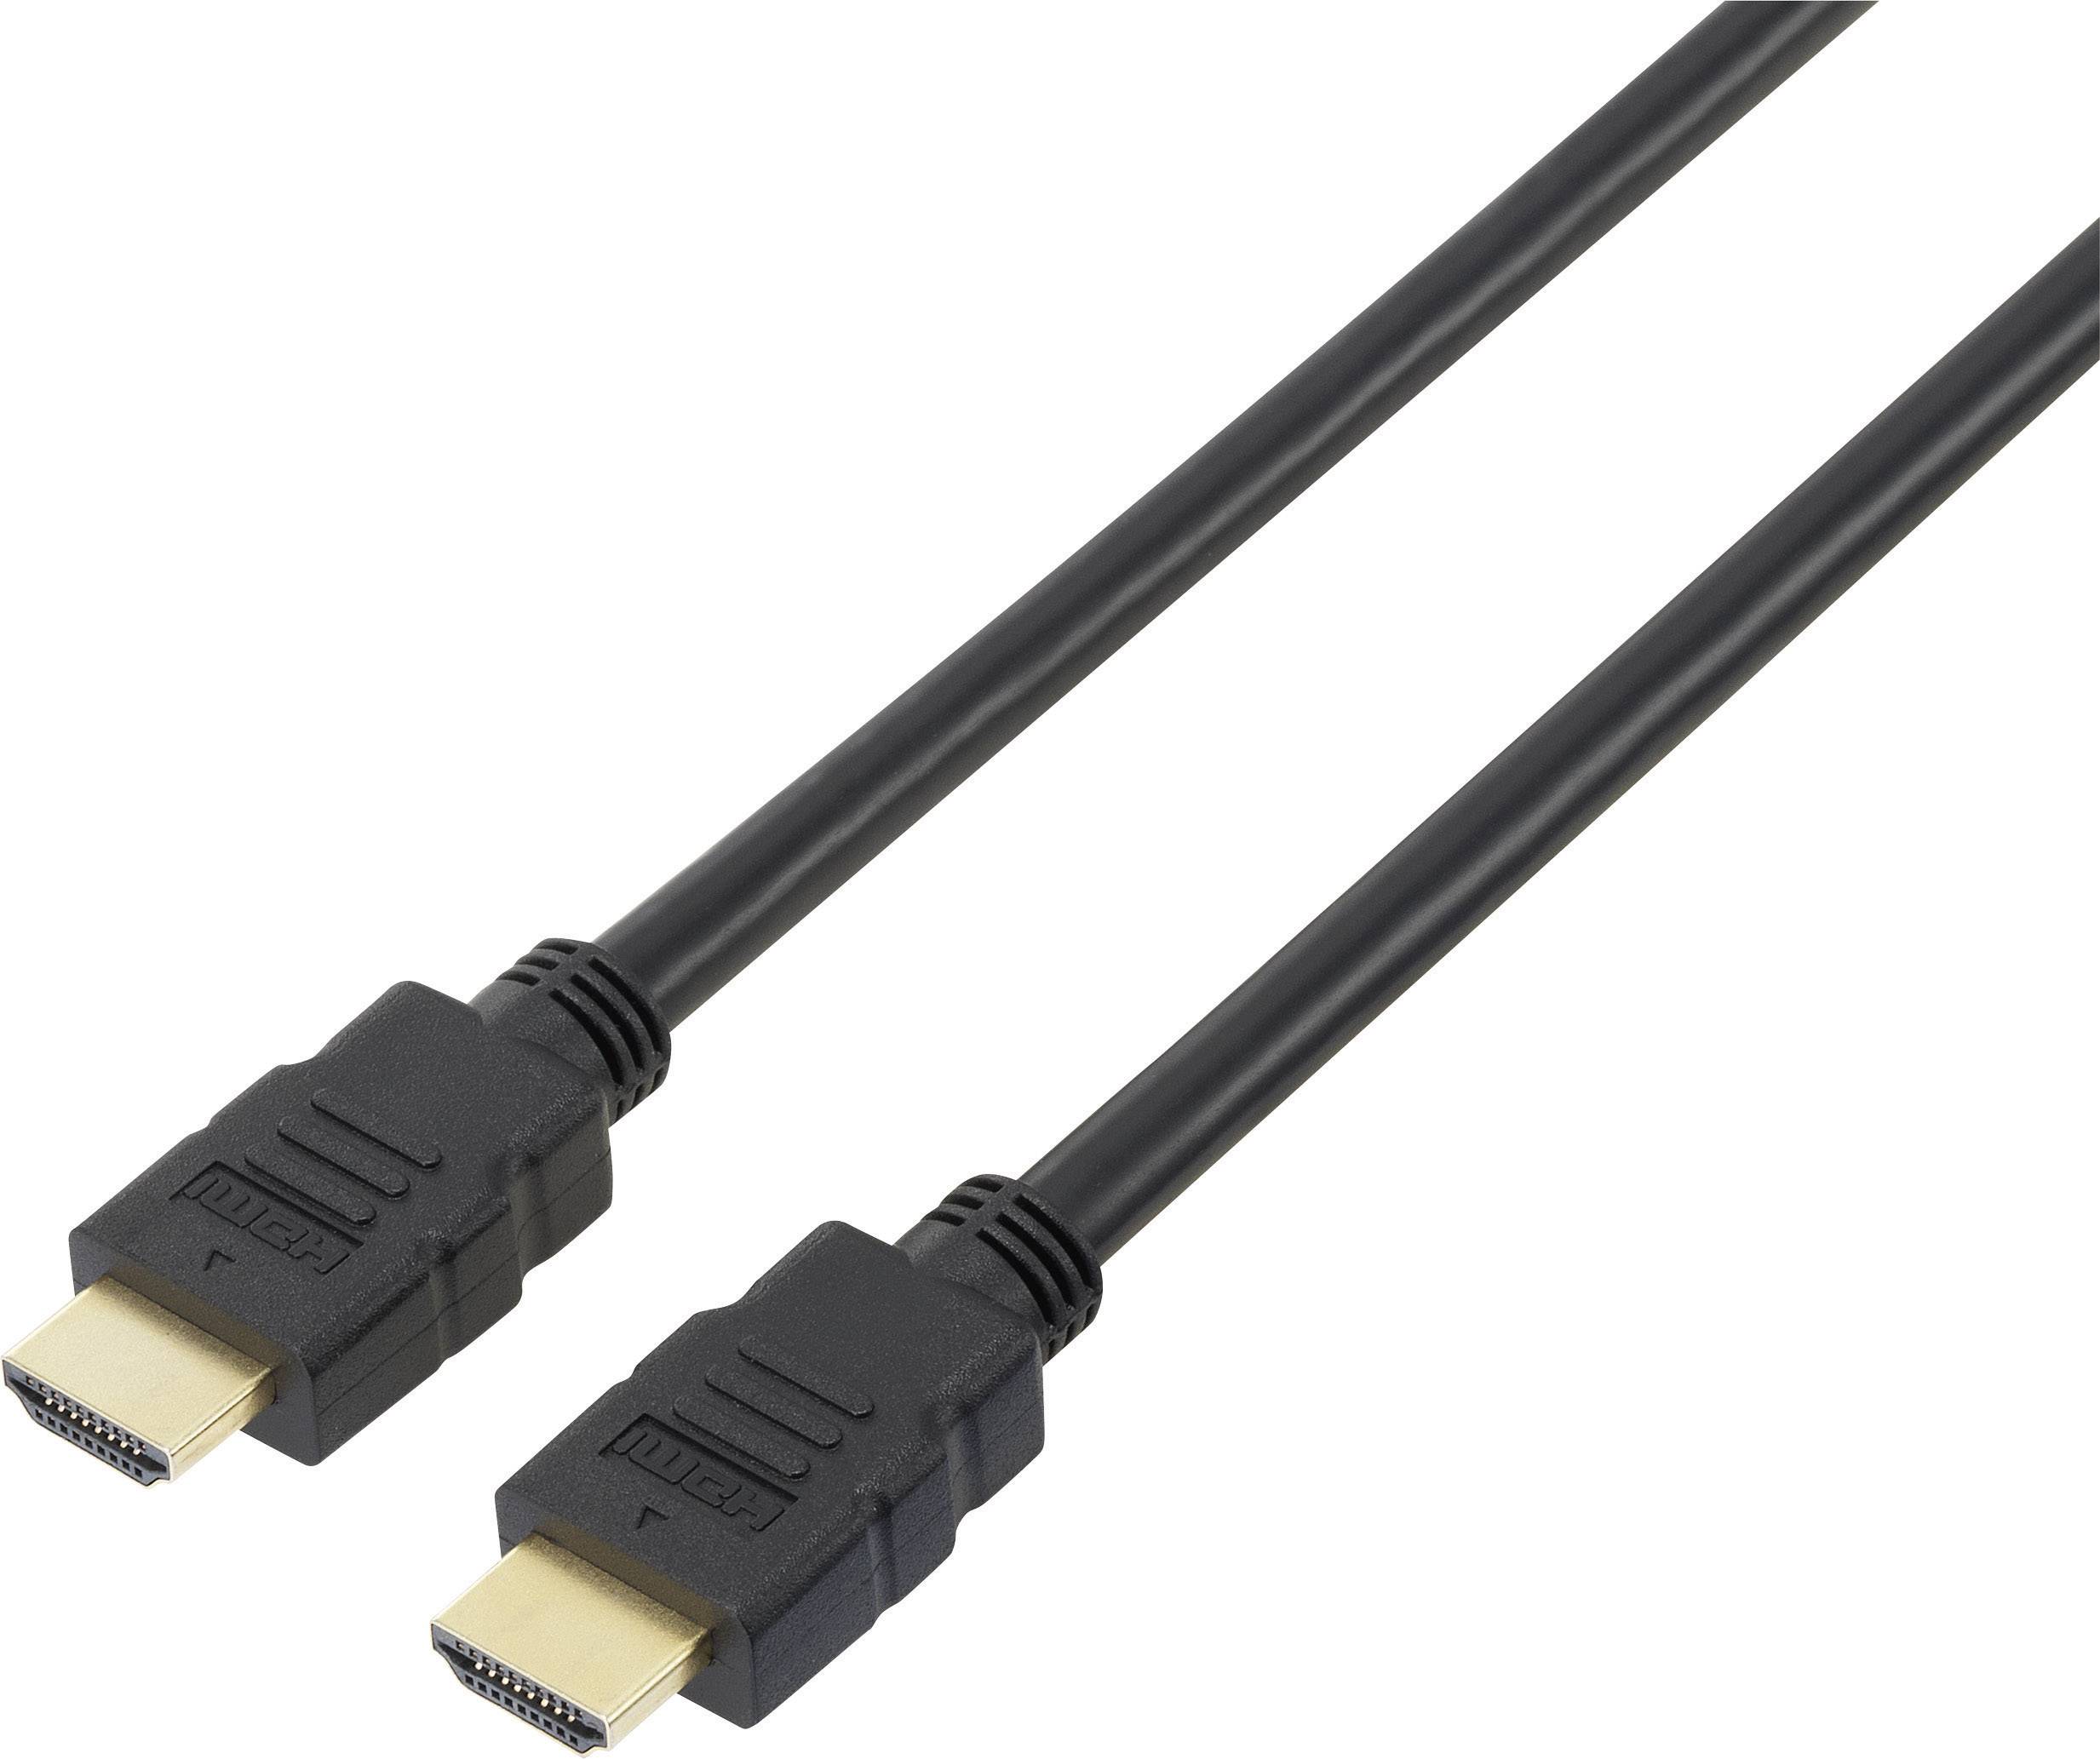 CONRAD SpeaKa Professional HDMI Anschlusskabel [1x HDMI-Stecker - 1x HDMI-Stecker] 5 m Schwarz